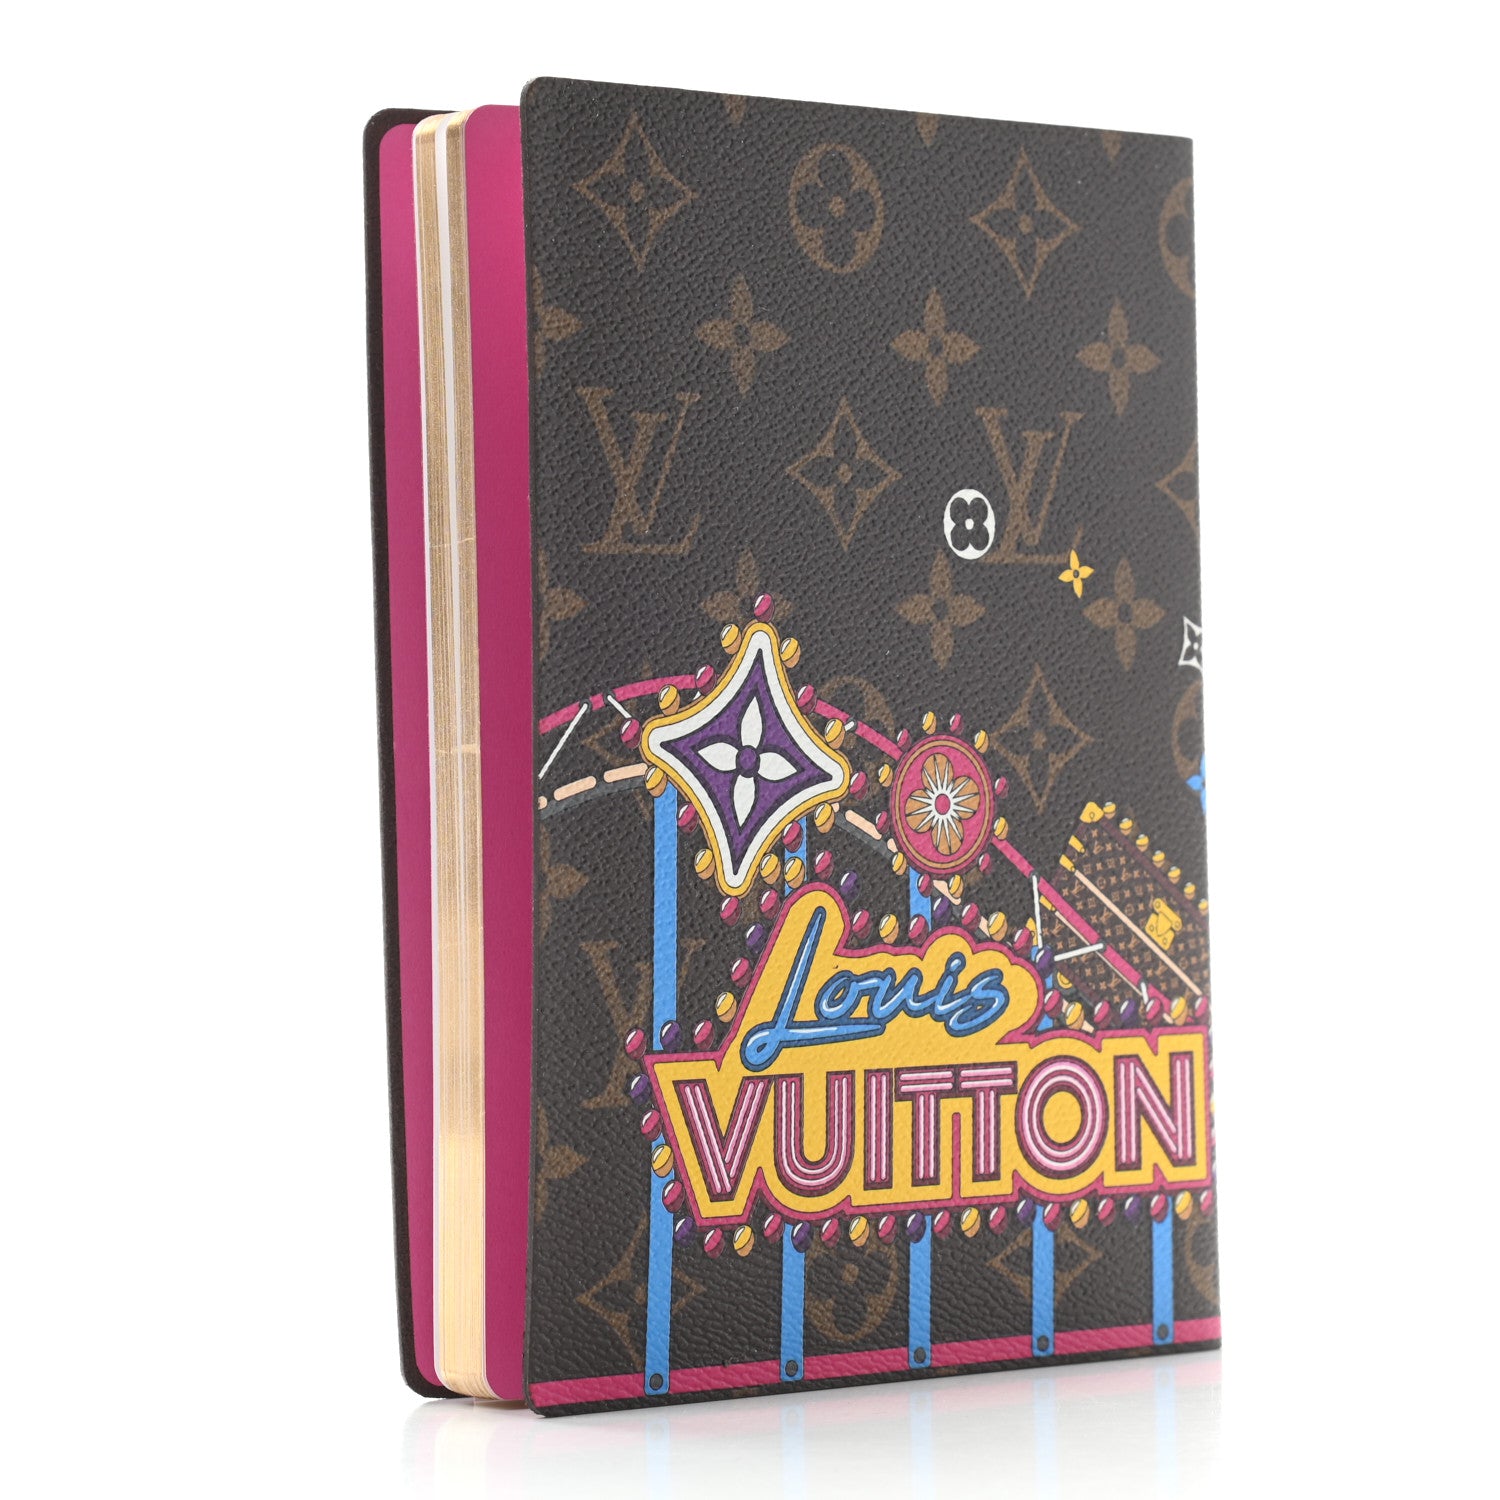 Vuitton Notebook 